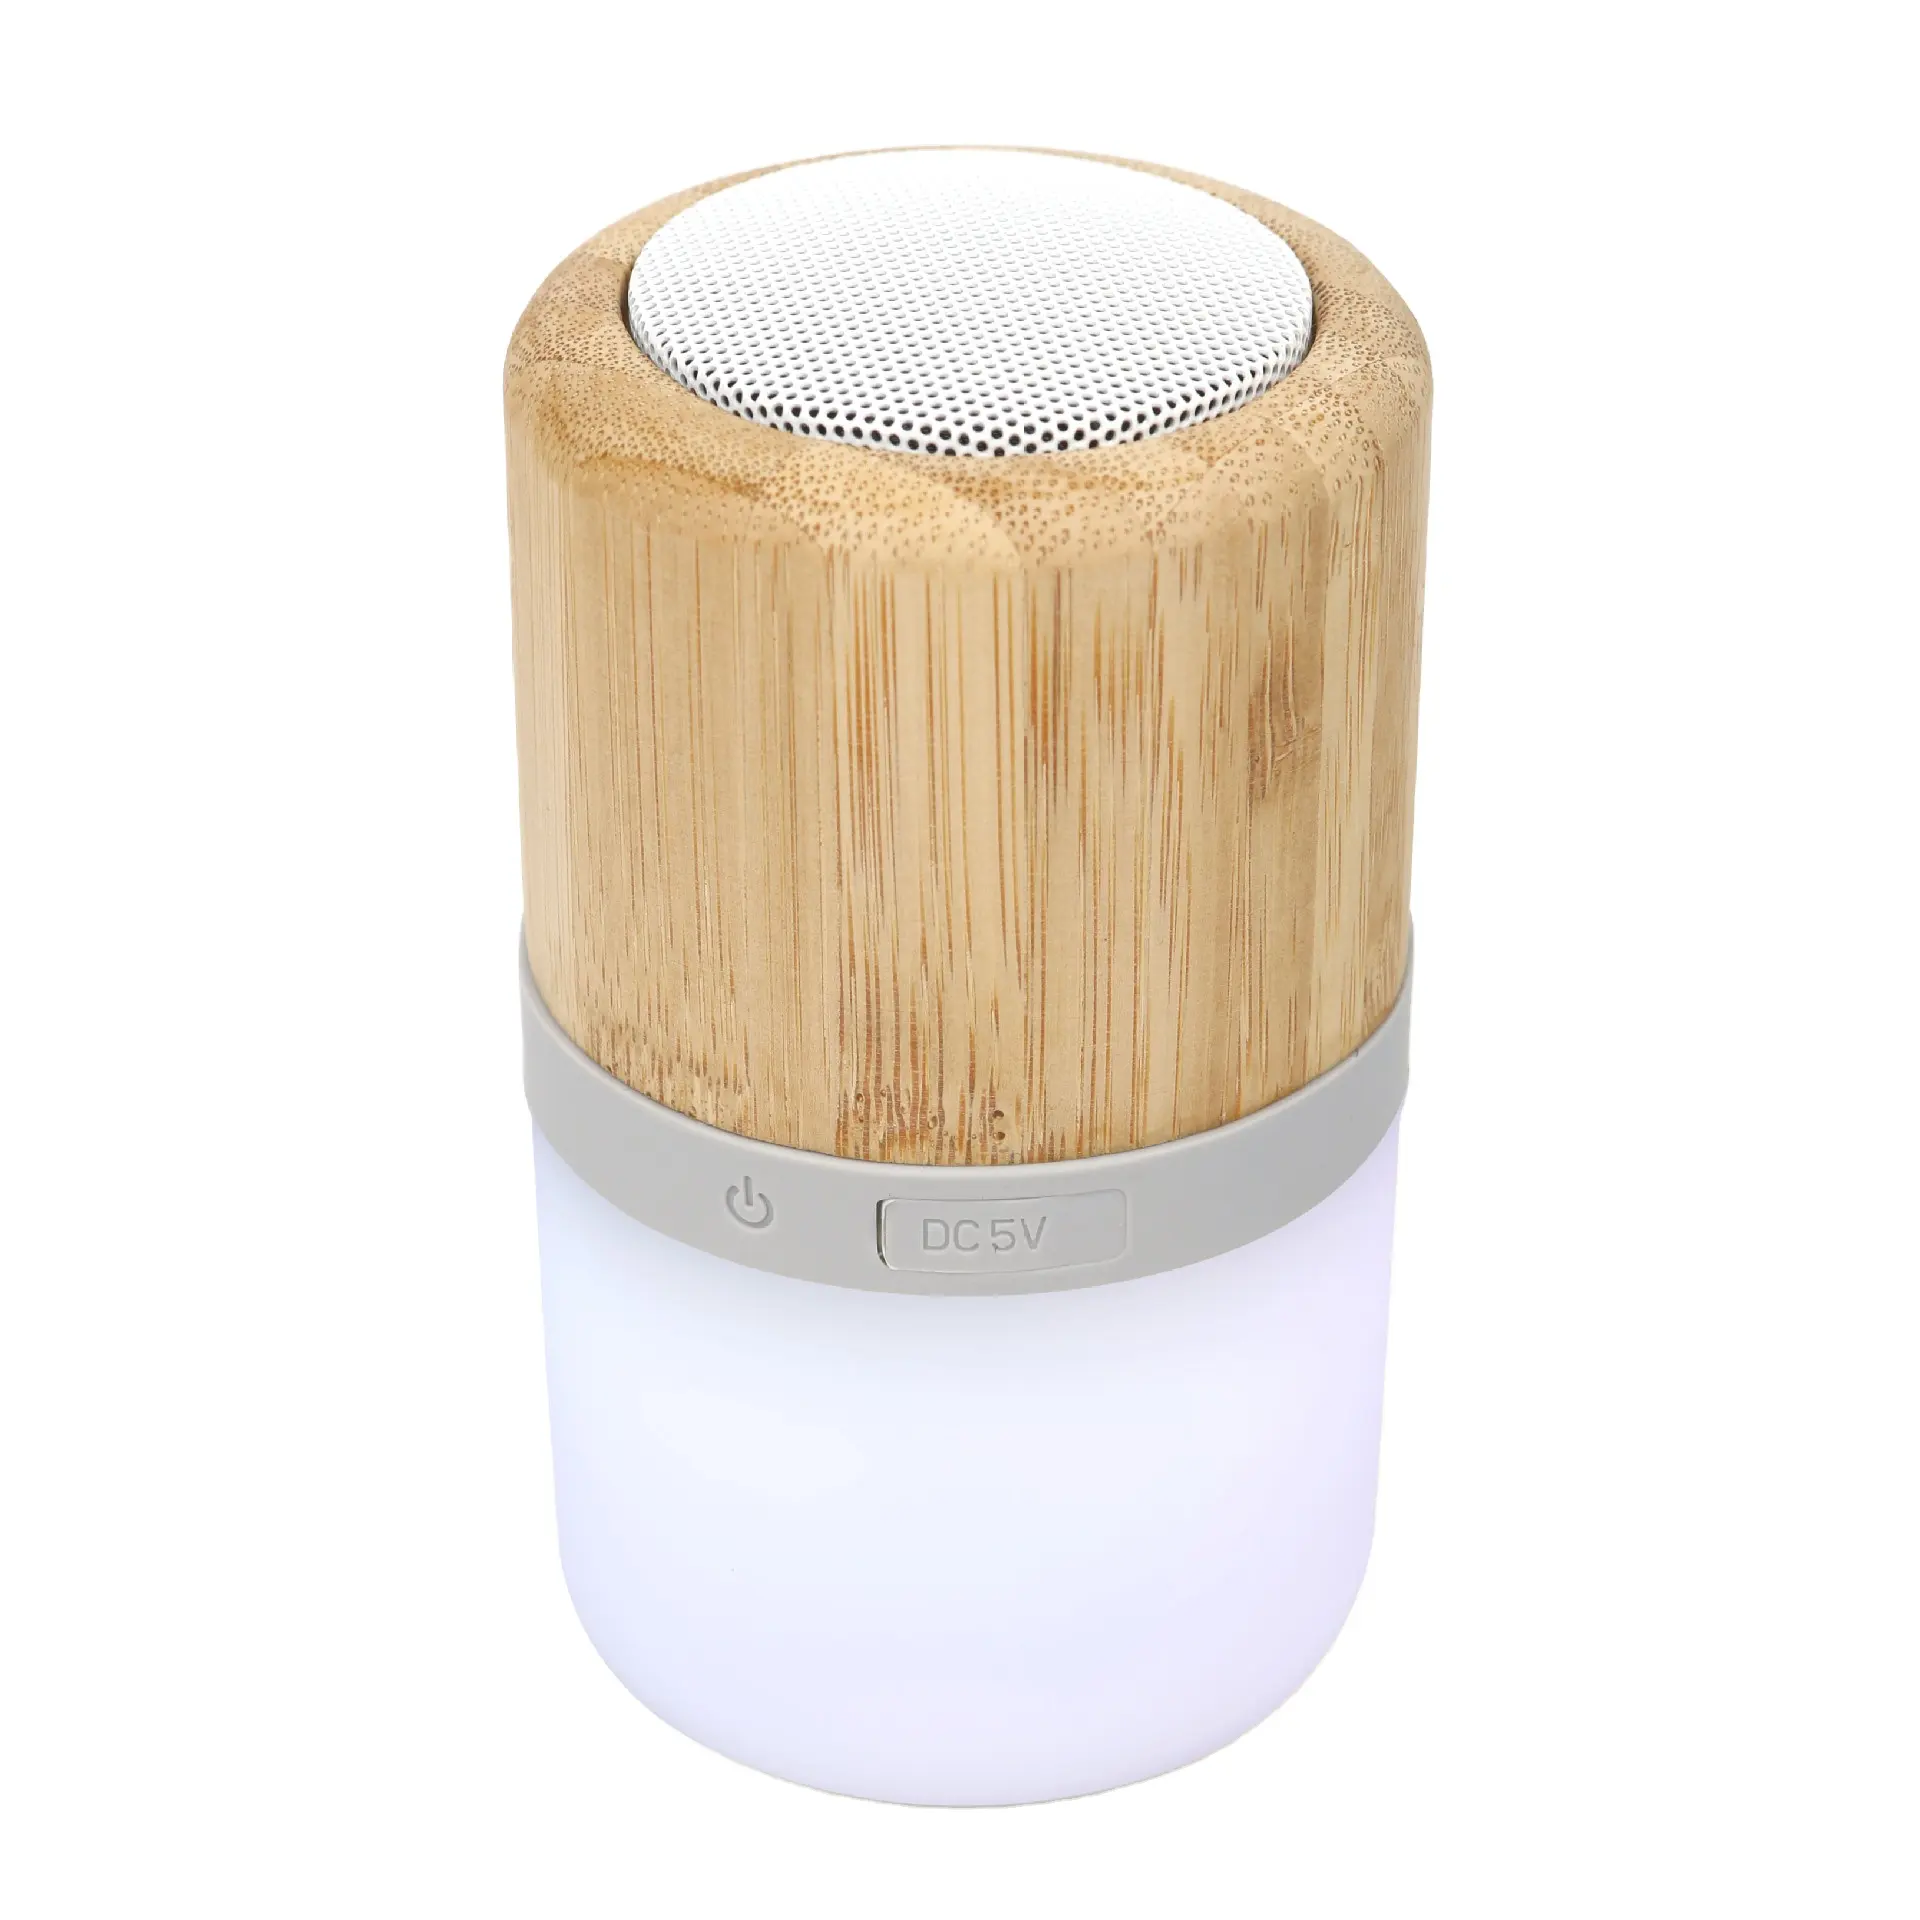 Haut-parleur Bluetooth rond sans fil, livraison gratuite, Oem, marque Logo, lampe ronde en bambou, bois, nouvelle collection